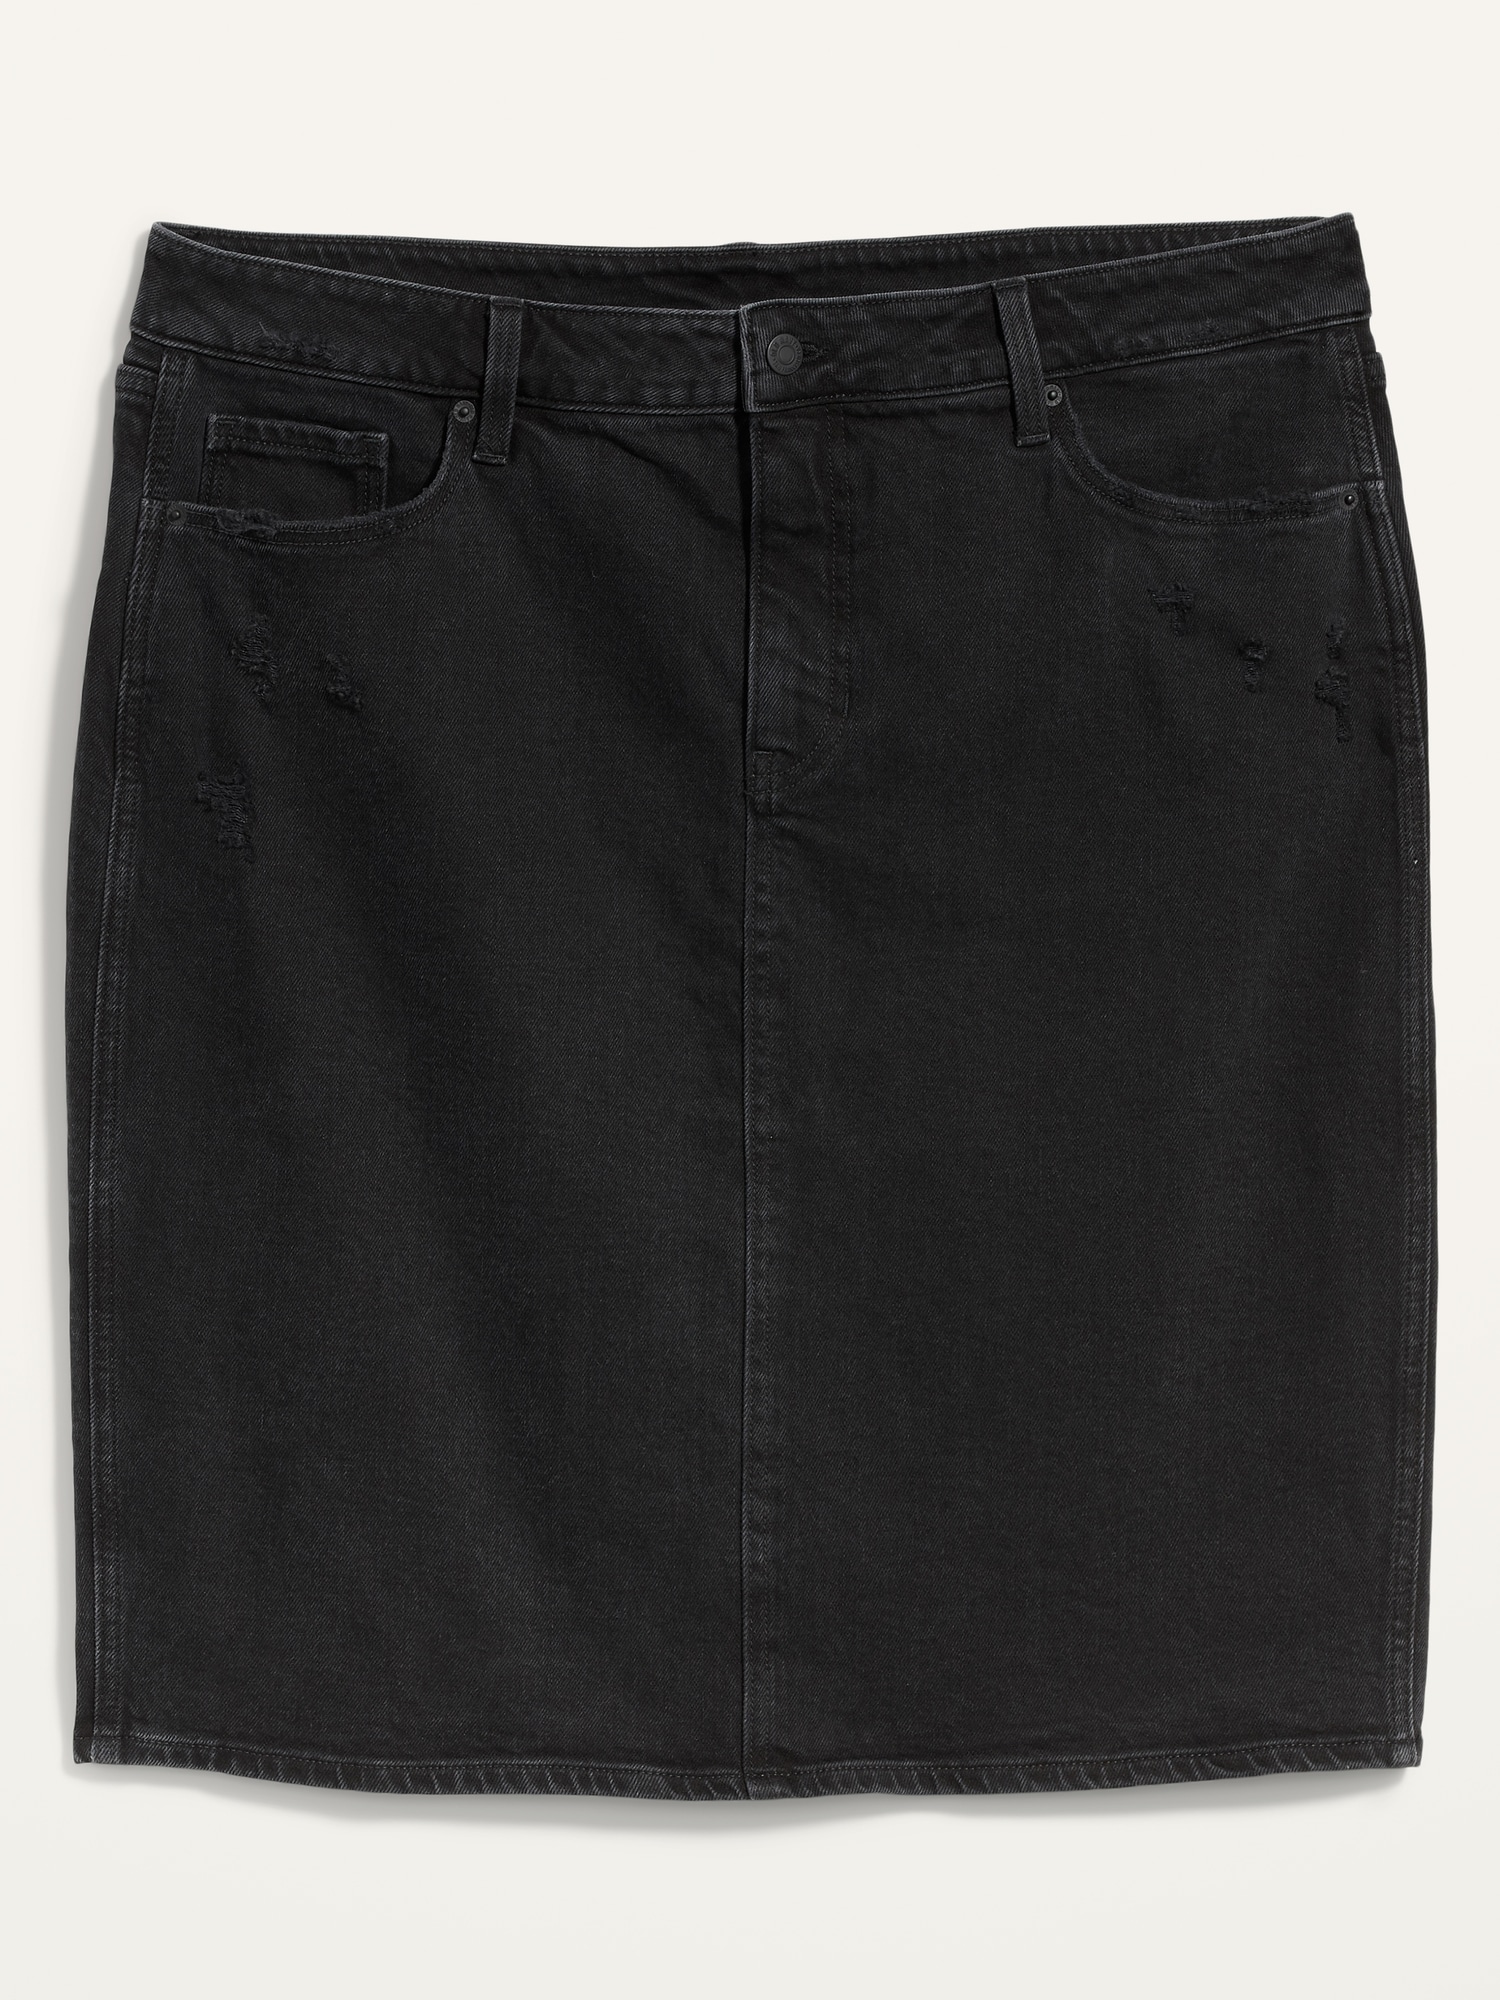 black jean skirt old navy